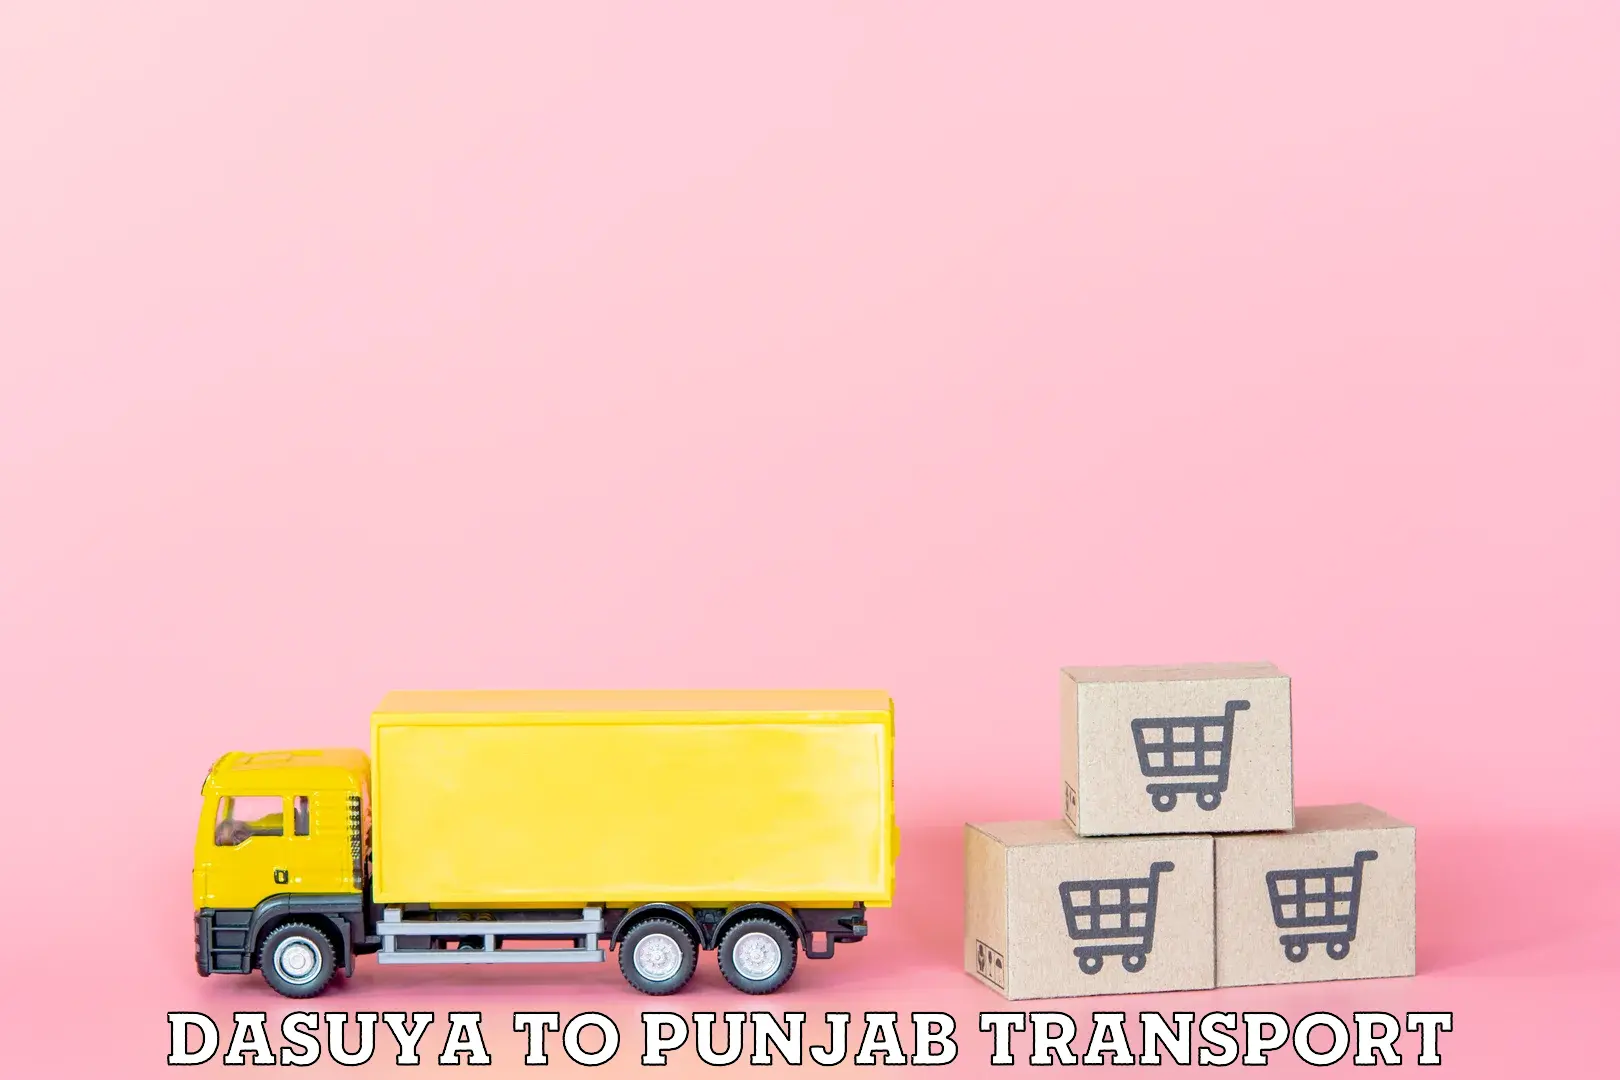 Transport in sharing Dasuya to Punjab